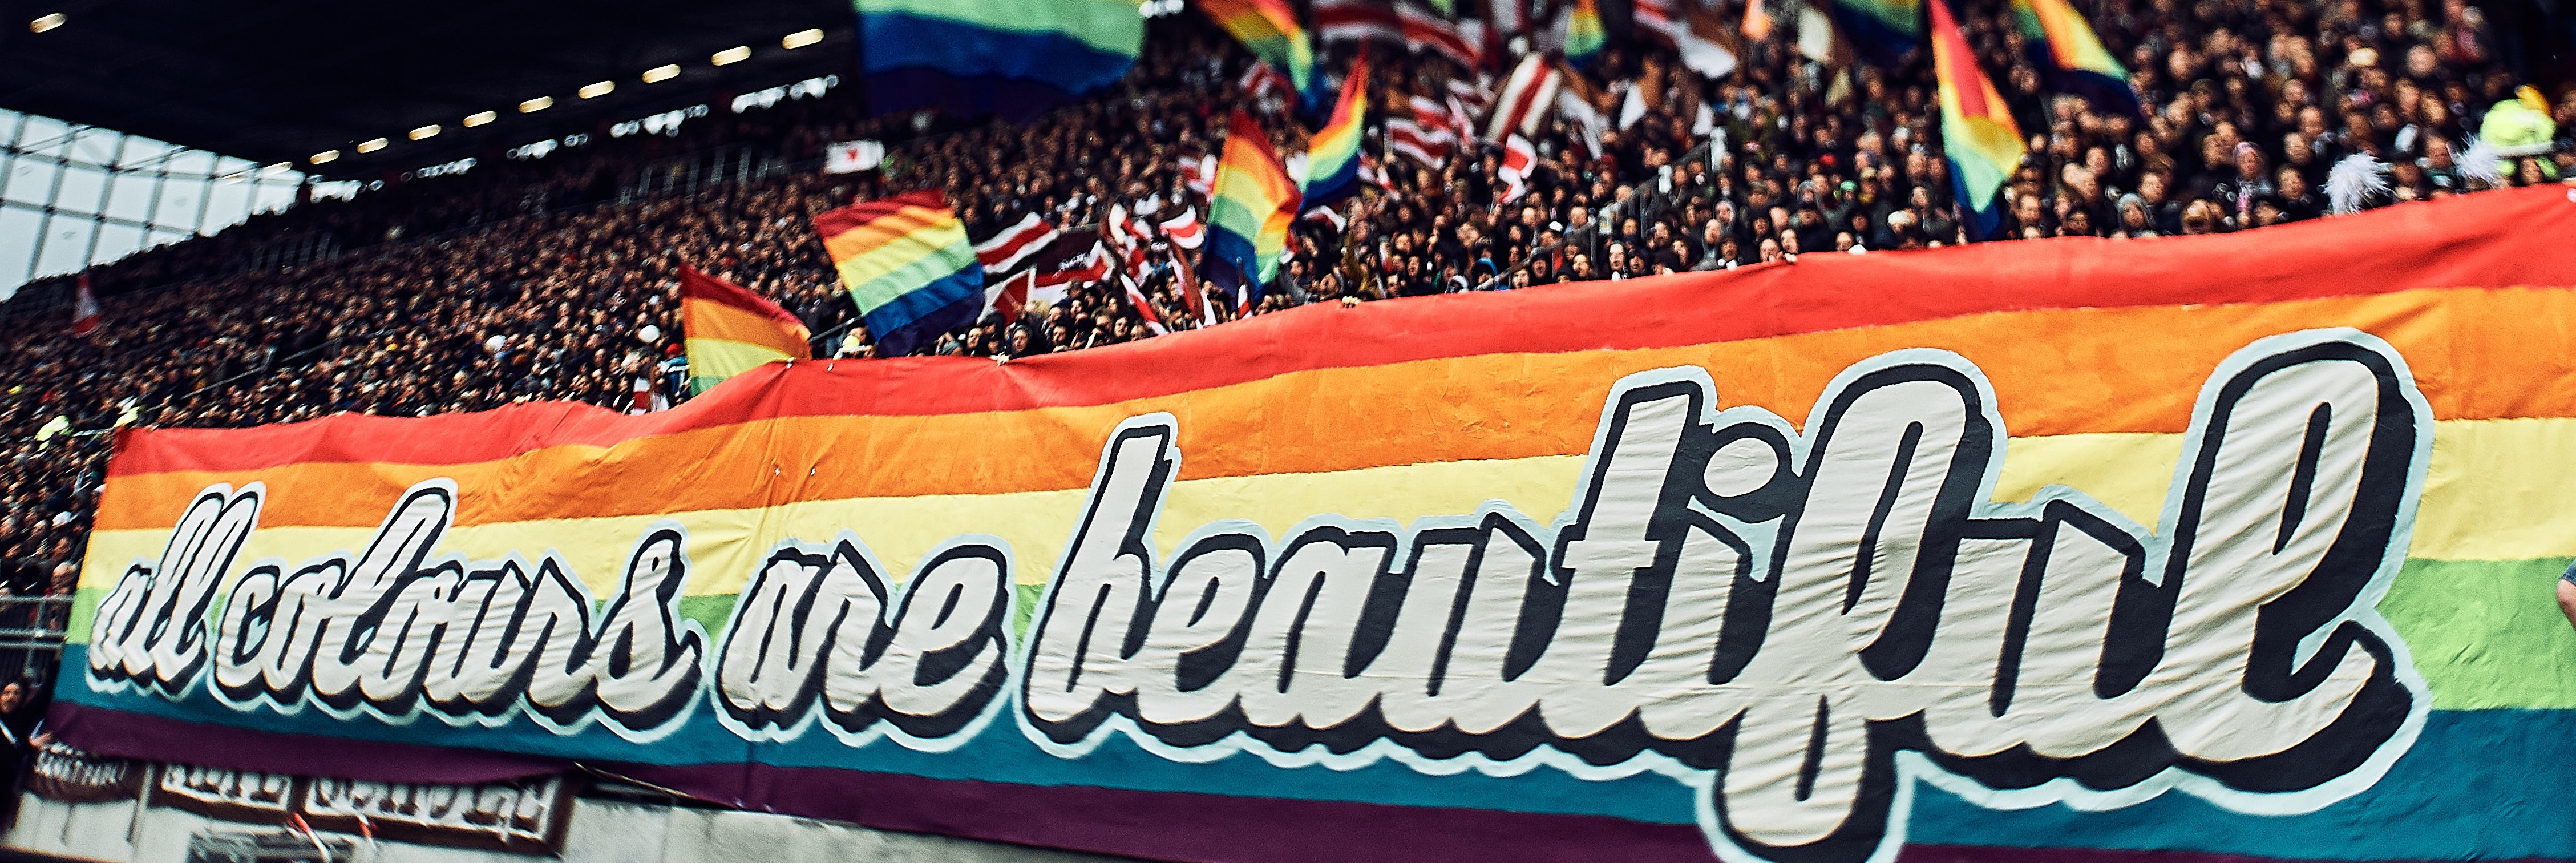 Choreographie St. Pauli. Unten Banner in Regenbogenfarben mit Aufdruck "all colours are beautiful". Darüber schwingen Fans bunte Fahnen.